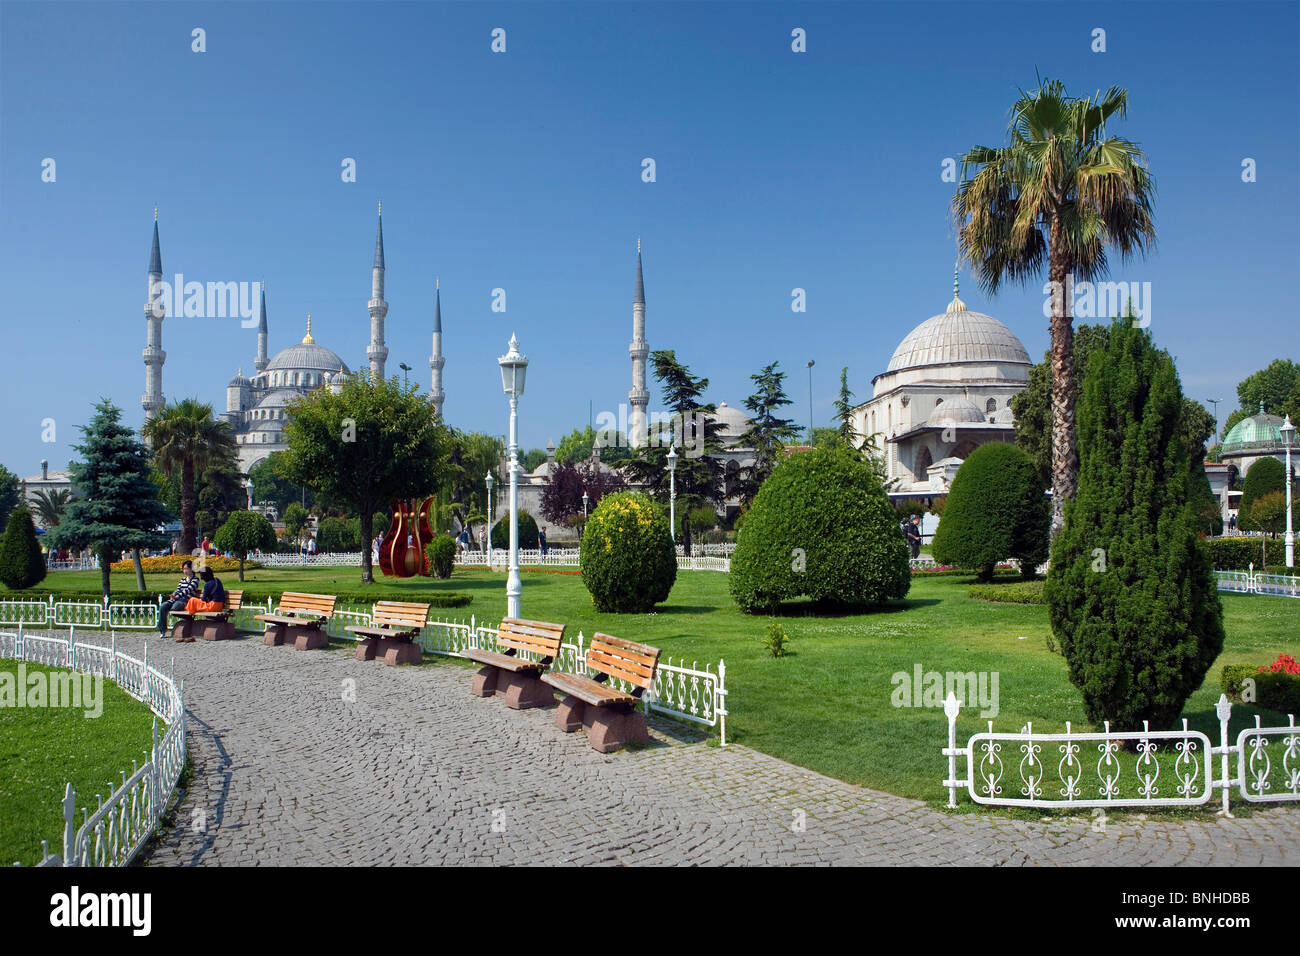 La Turchia Giugno 2008 Istanbul city Moschea Blu Sultan Ahmed Mosque parco giardino verde minareti Islam Foto Stock